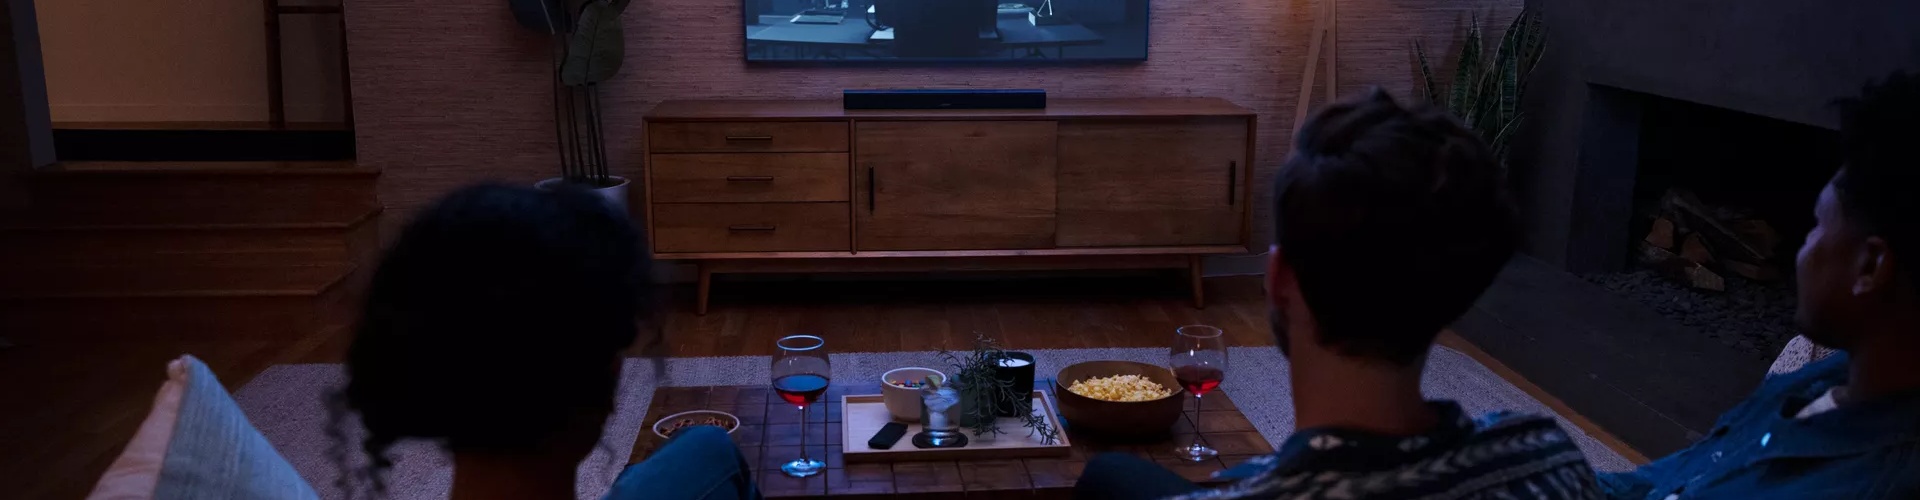 Bose Smart Soundbar 600 in a living room